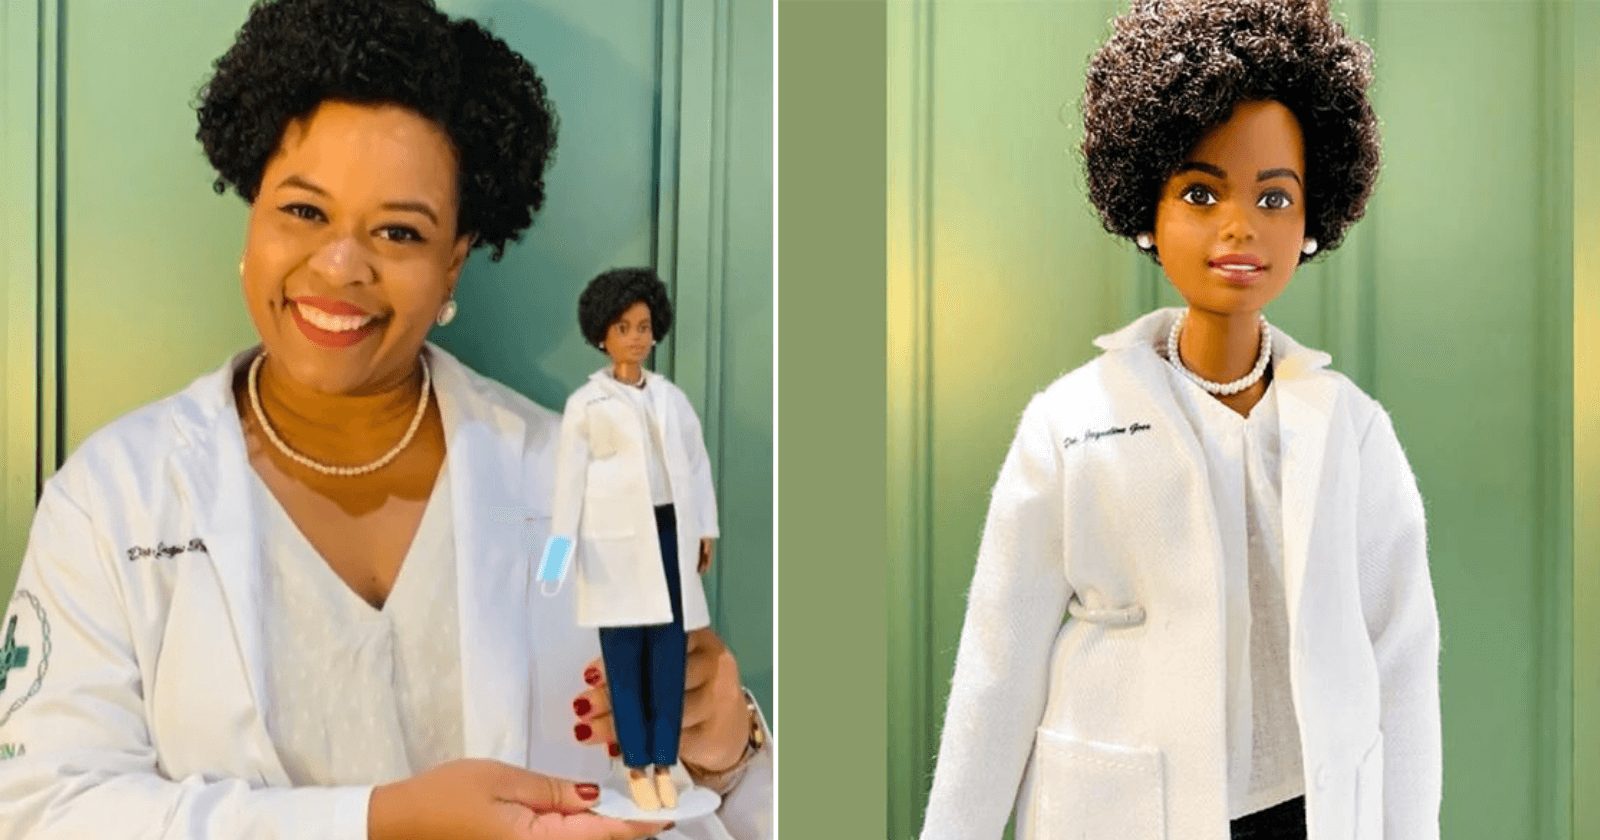 Biomédica brasileira ganha sua versão Barbie como homenagem